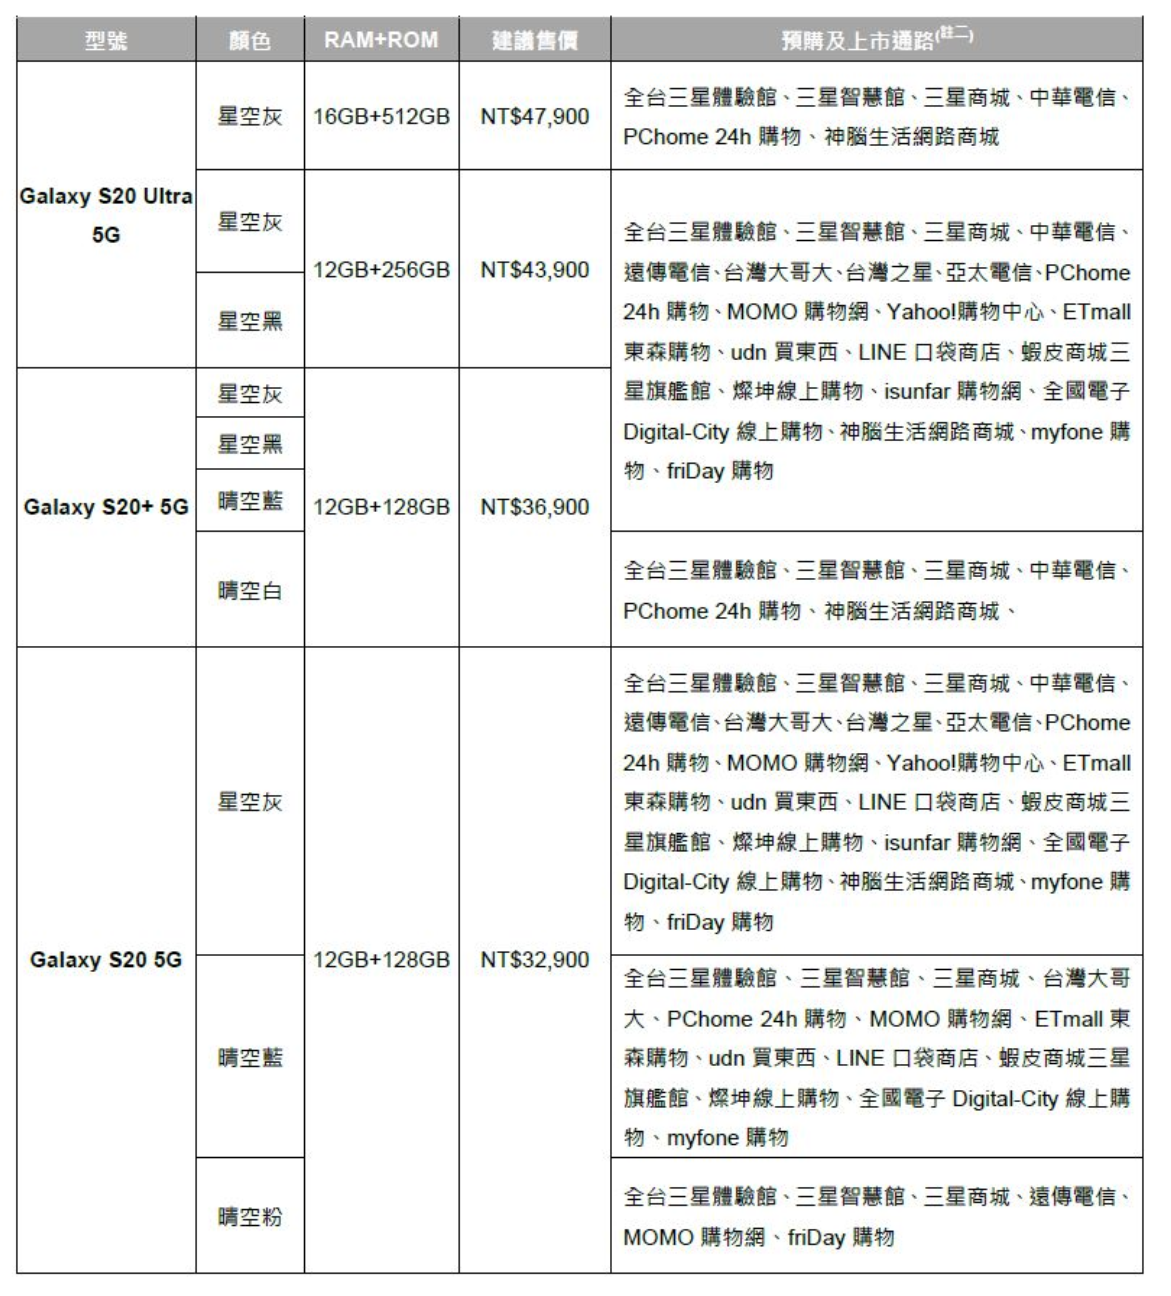 S20 購機懶人包！三星 Galaxy S20 系列台灣上市價格 / 預購 / 優惠整理！3/10 開始預購！3/20 全通路上市！ @3C 達人廖阿輝